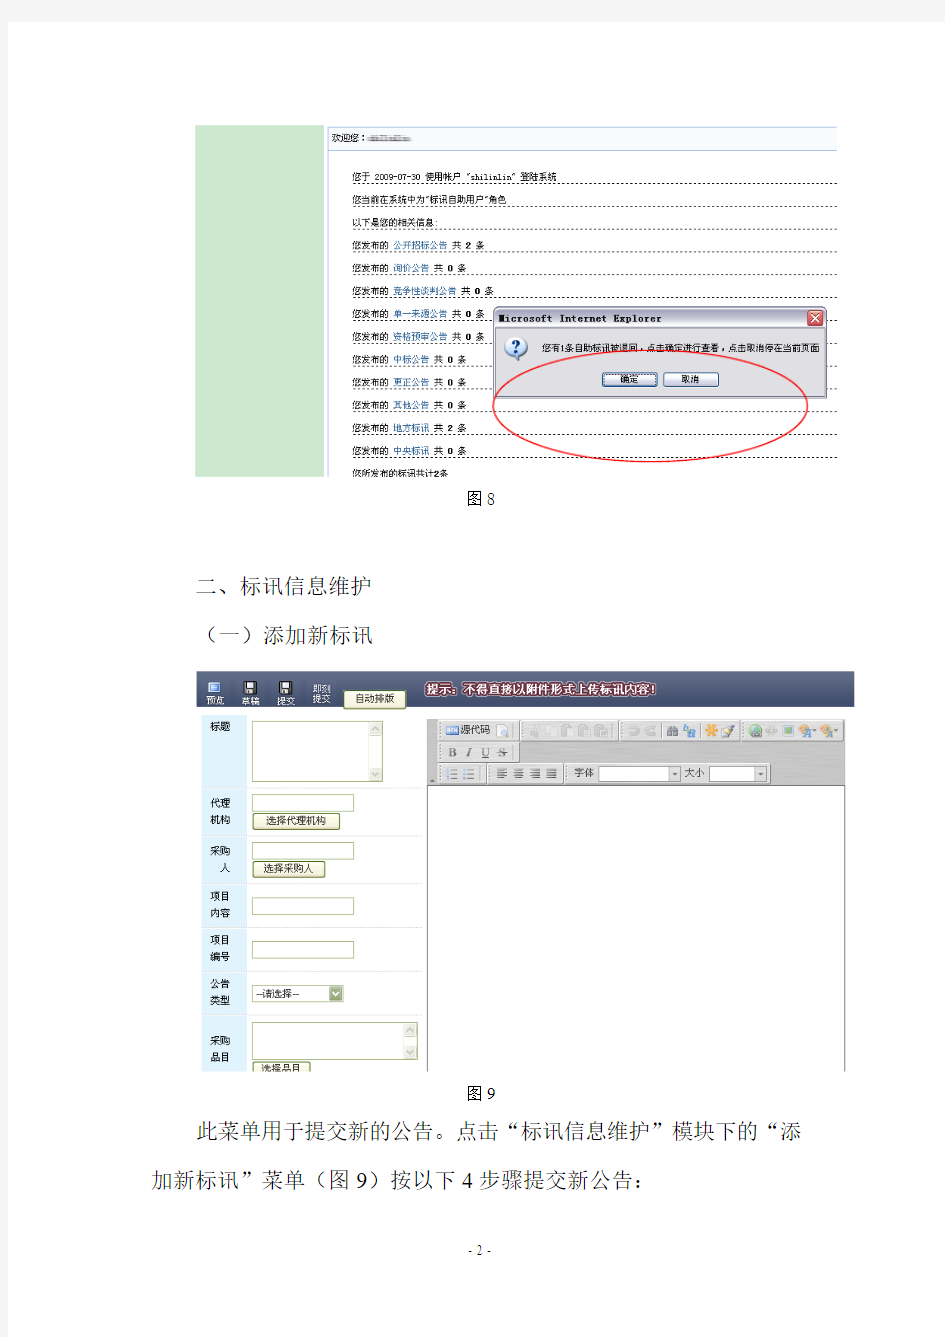 中国政府采购网采购公告发布管理系统操作手册1